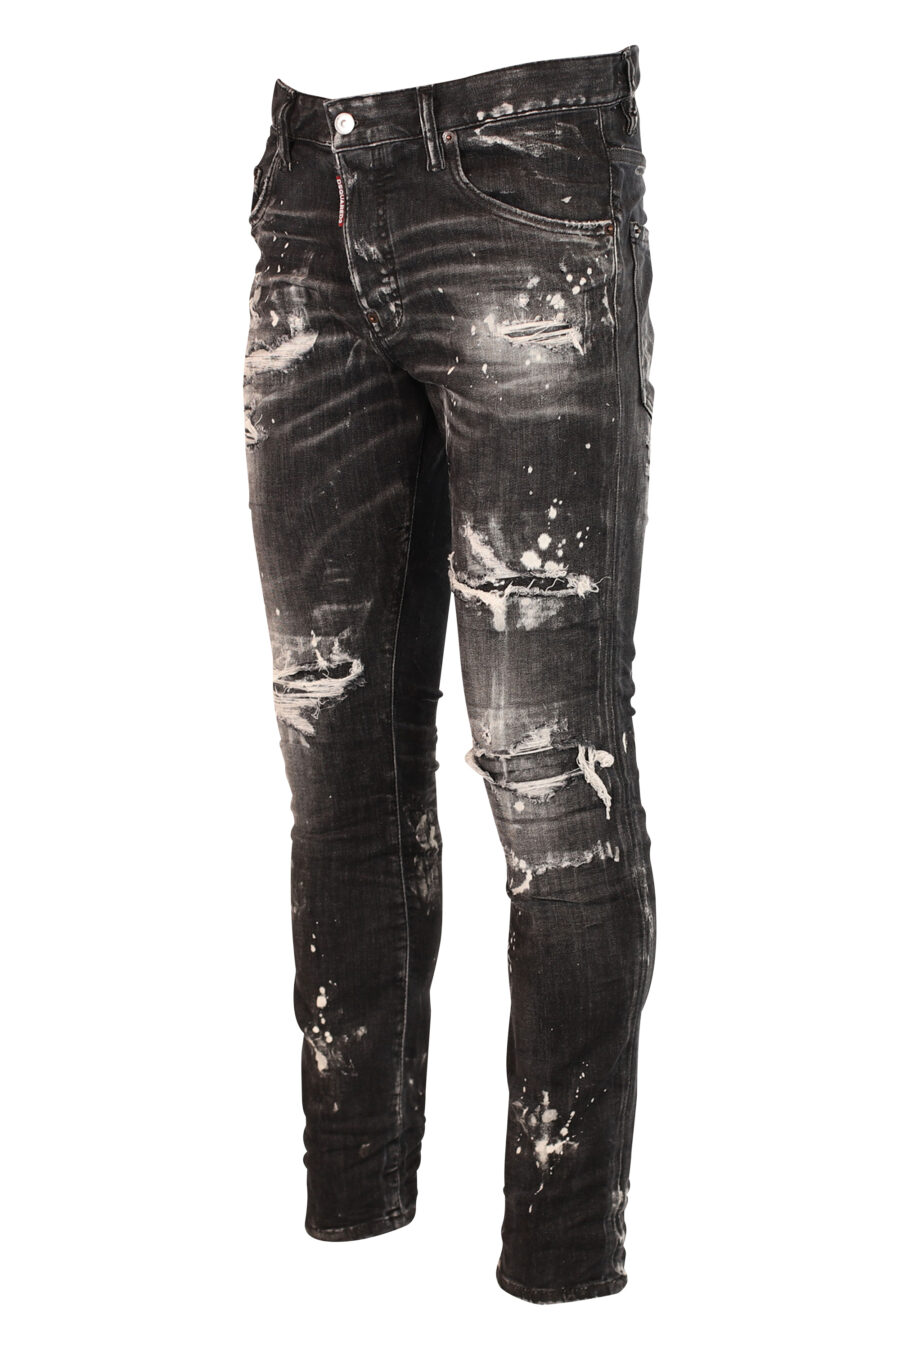 Skater-Jeans-Hose schwarz abgenutzt mit Rissen - 8052134938102 2